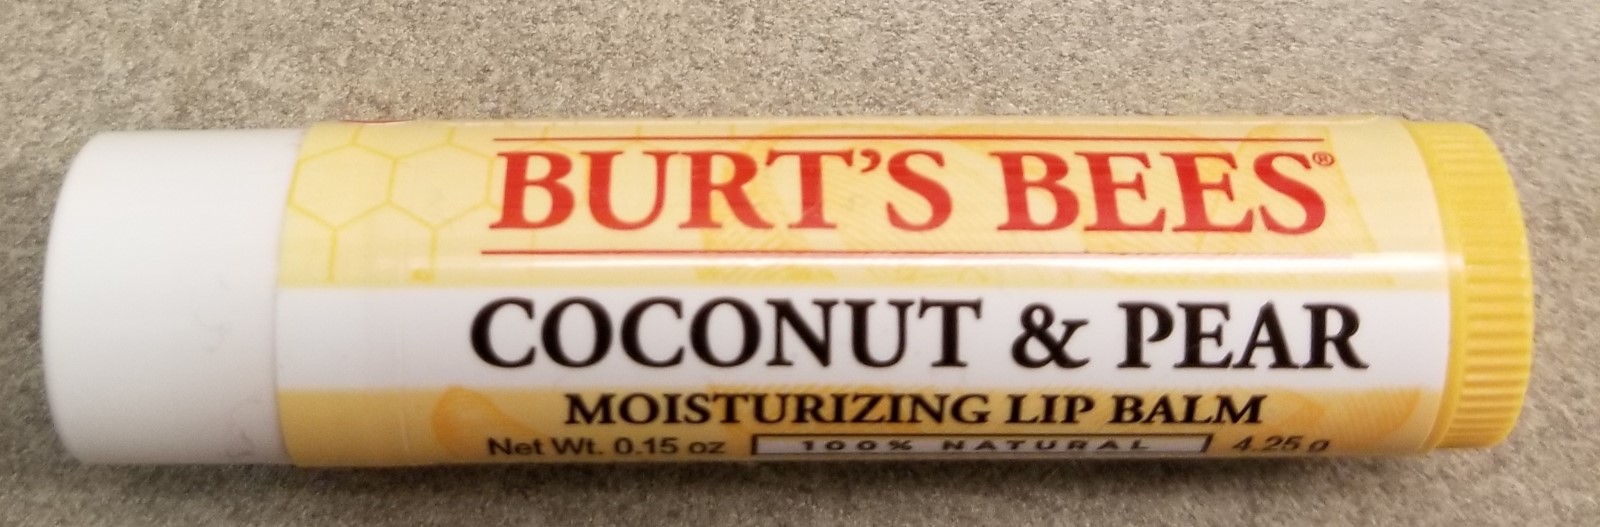 图伯特的蜜蜂唇膏:椰子和梨